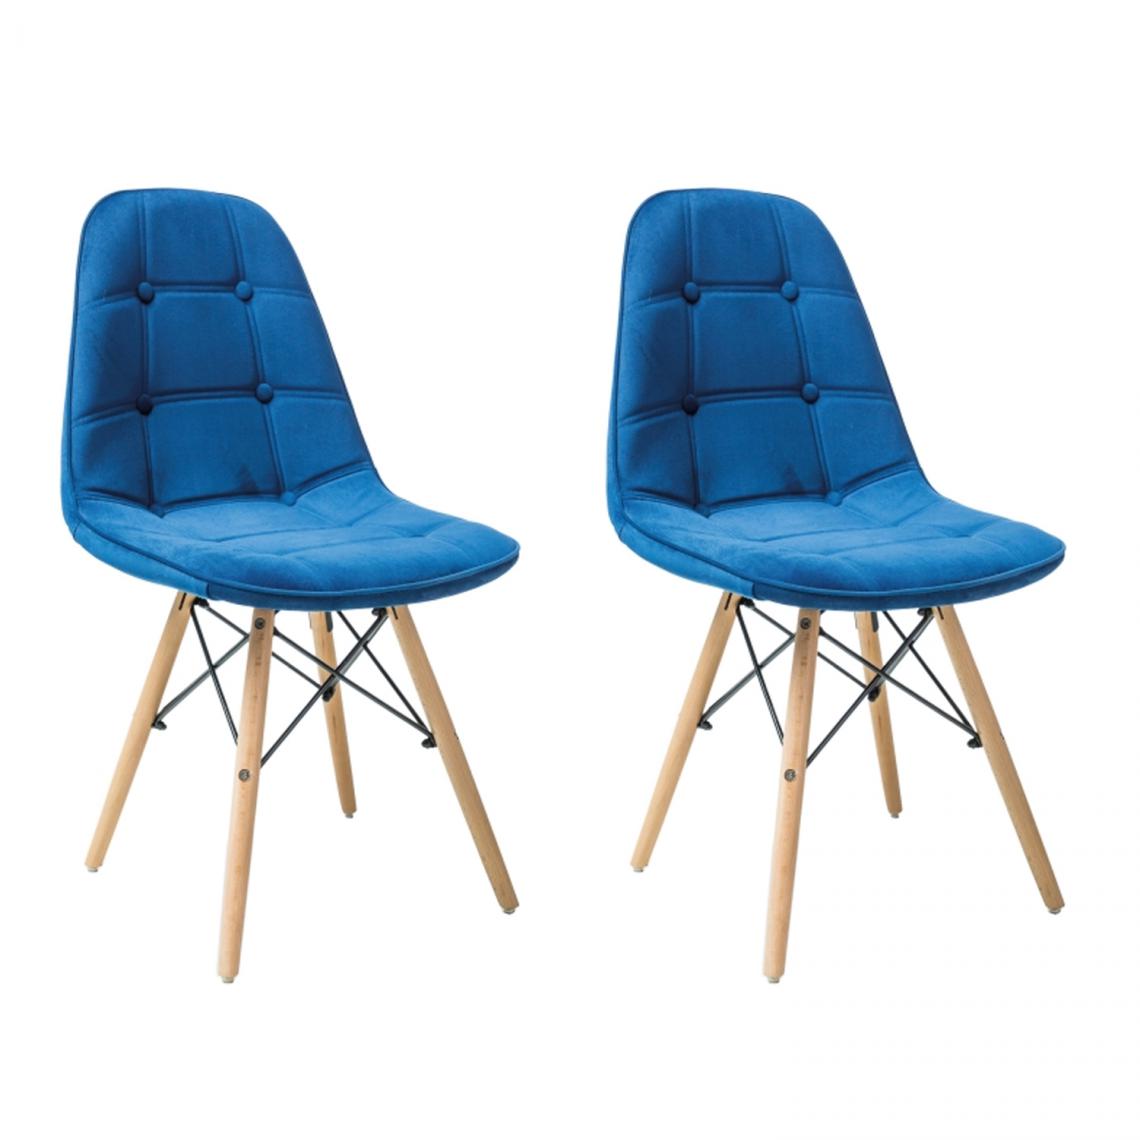 Hucoco - AXES - Lot de 2 chaises style scandinave - 85x44x41 cm - Structure en bois - Tissu velours - Bleu - Chaises